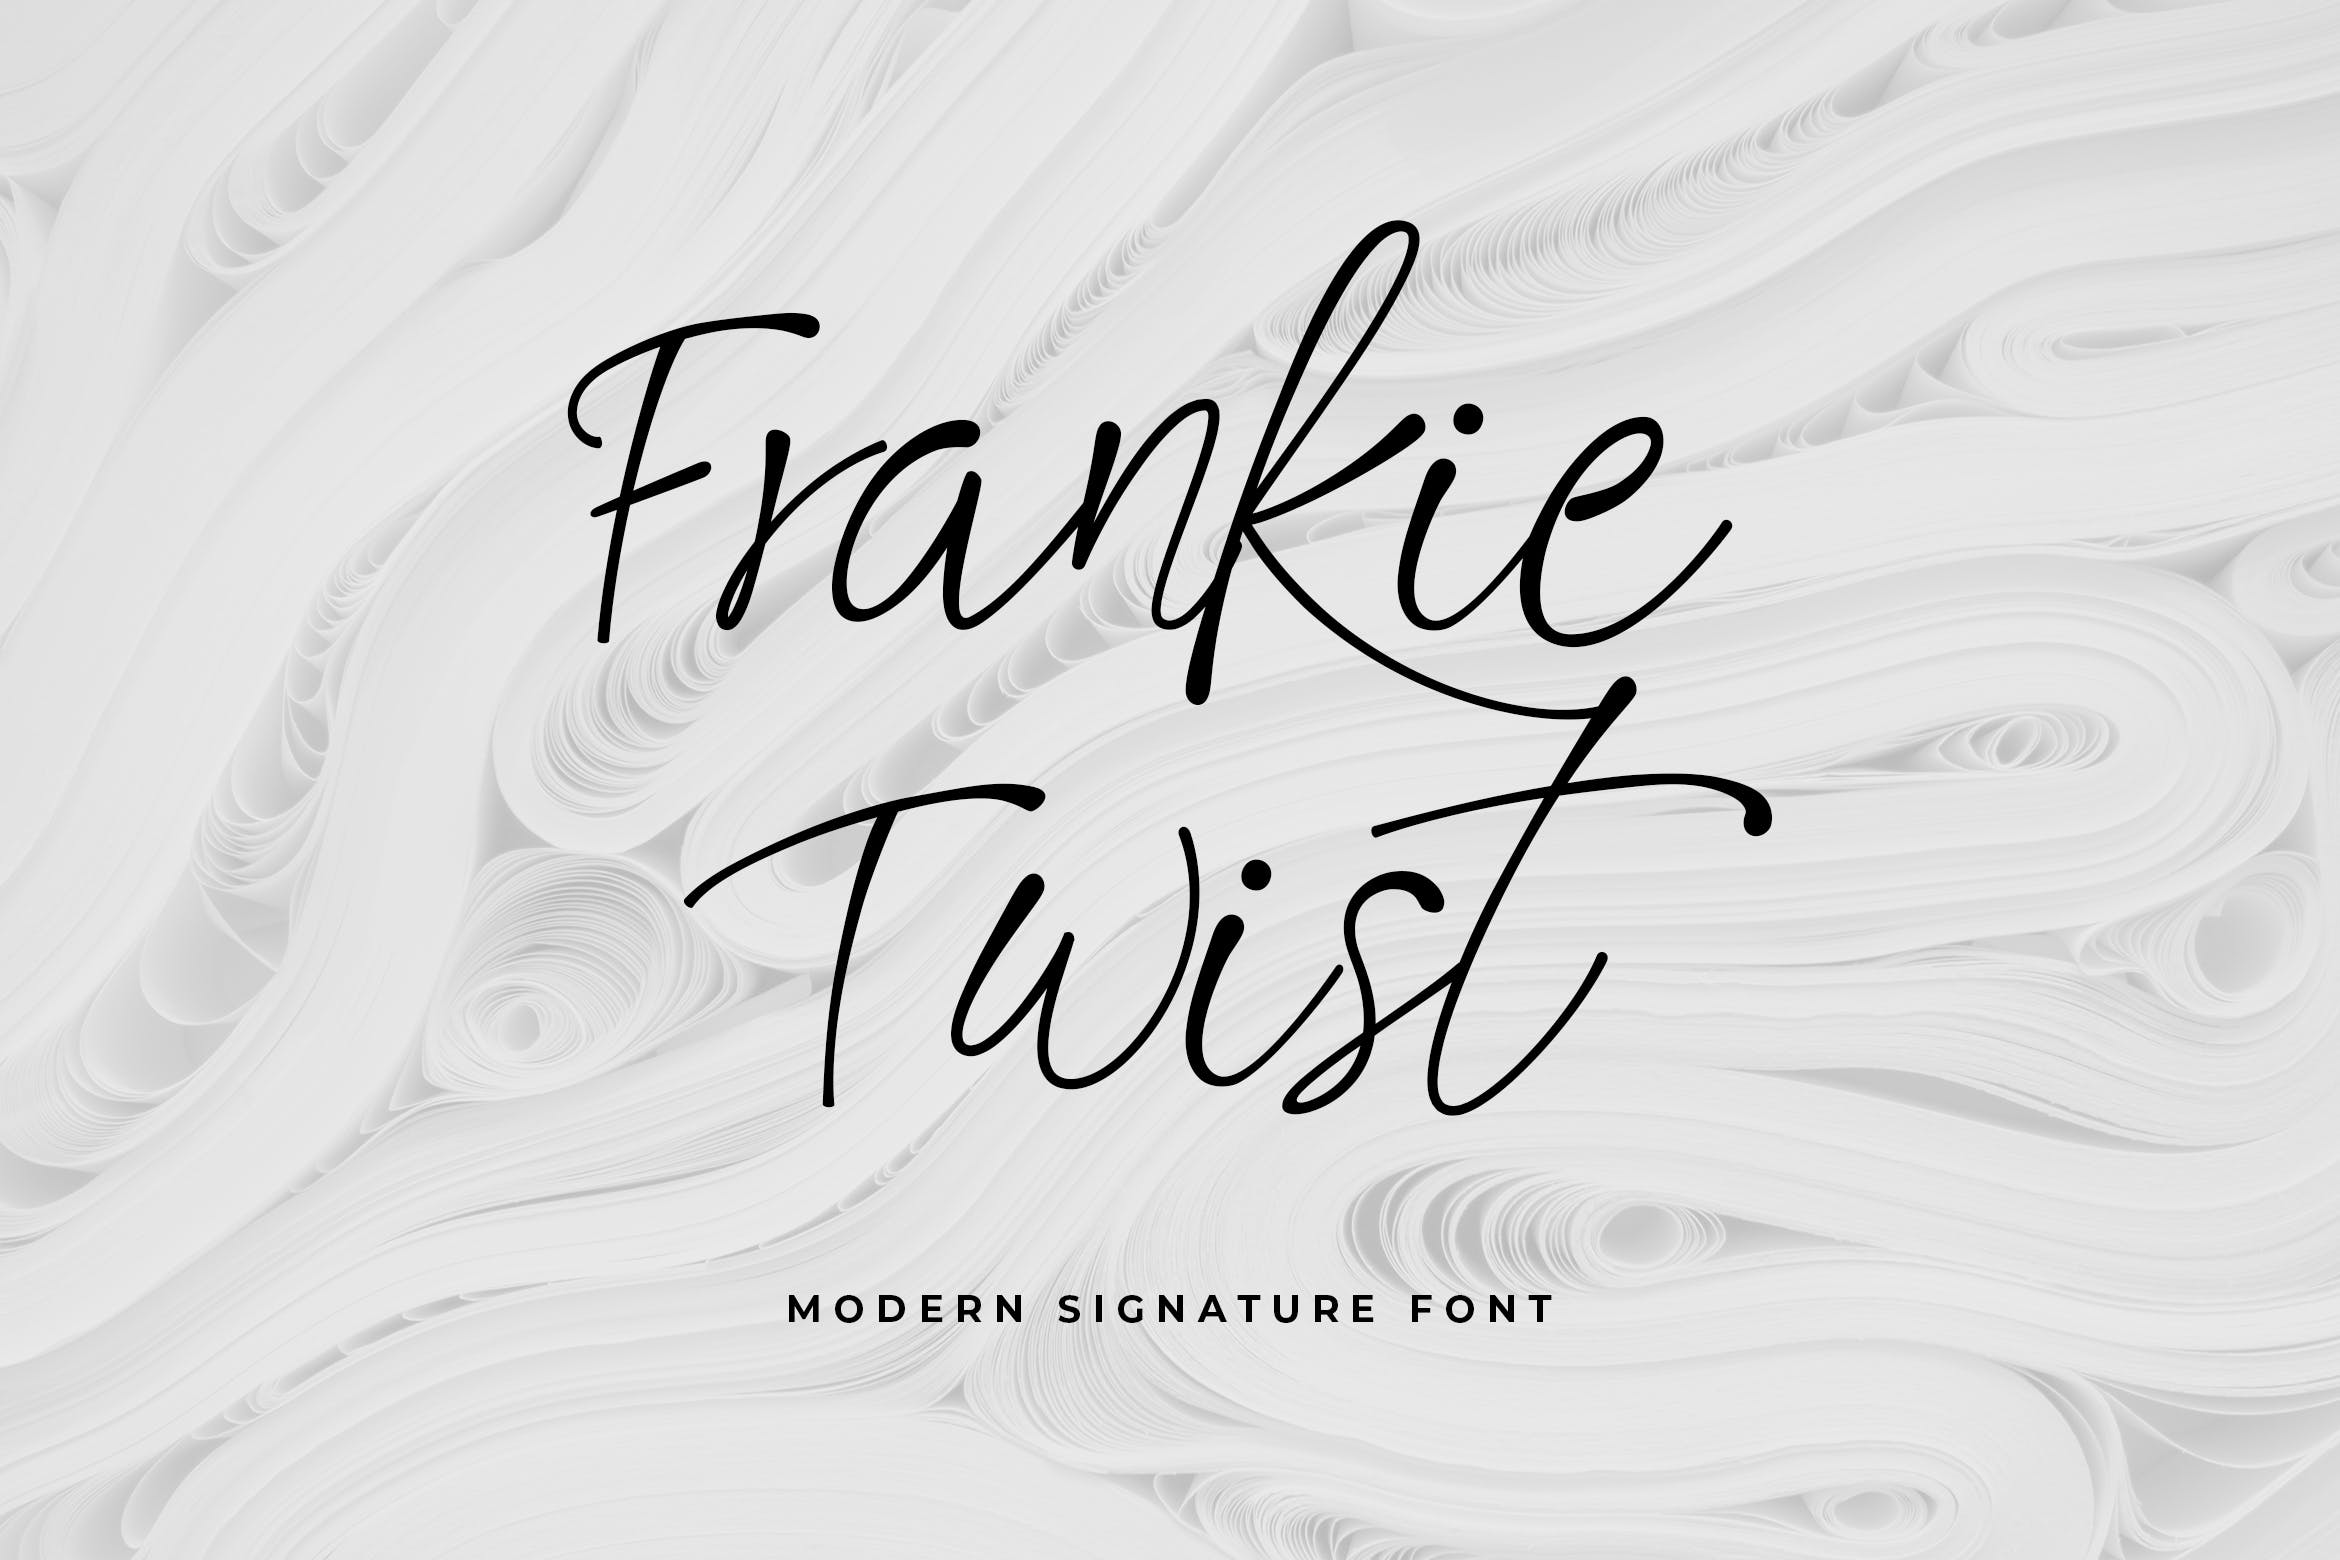 时尚品牌设计英文细线条字体 Frankie Twist Signature Font 设计素材 第1张